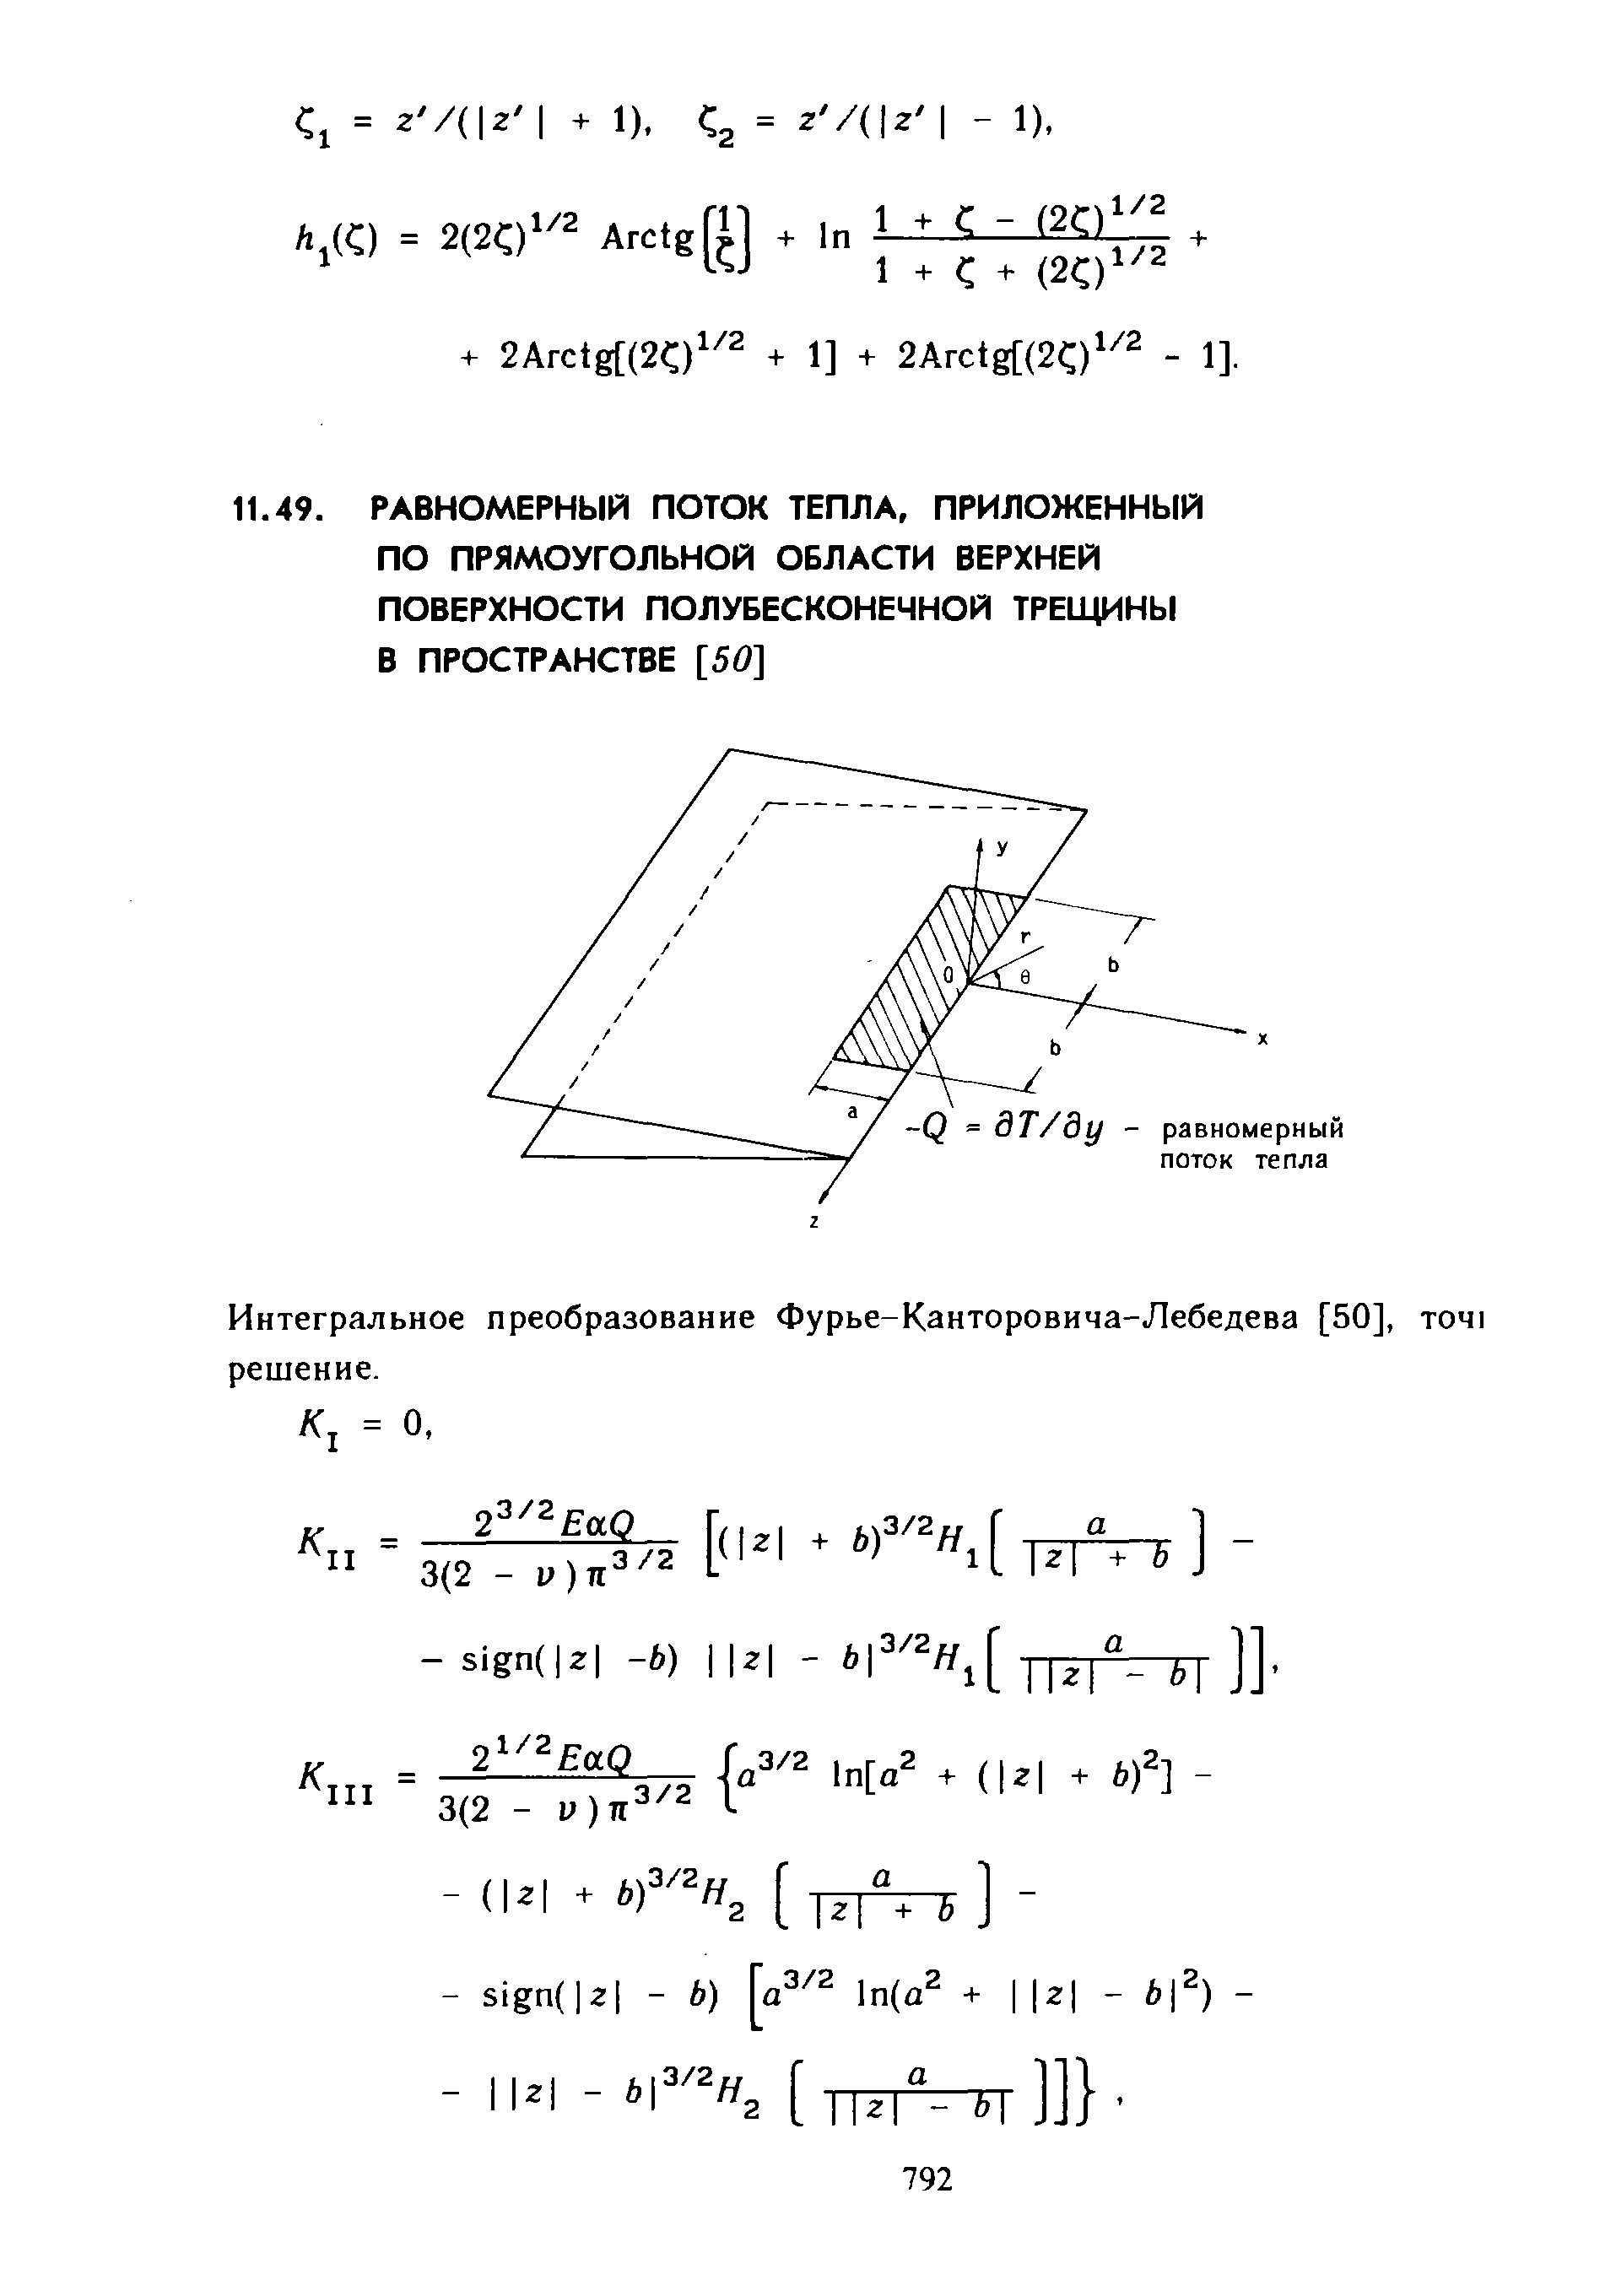 Интегральное преобразование Фурье-Канторовича-Лебедева [50], тот решение.
